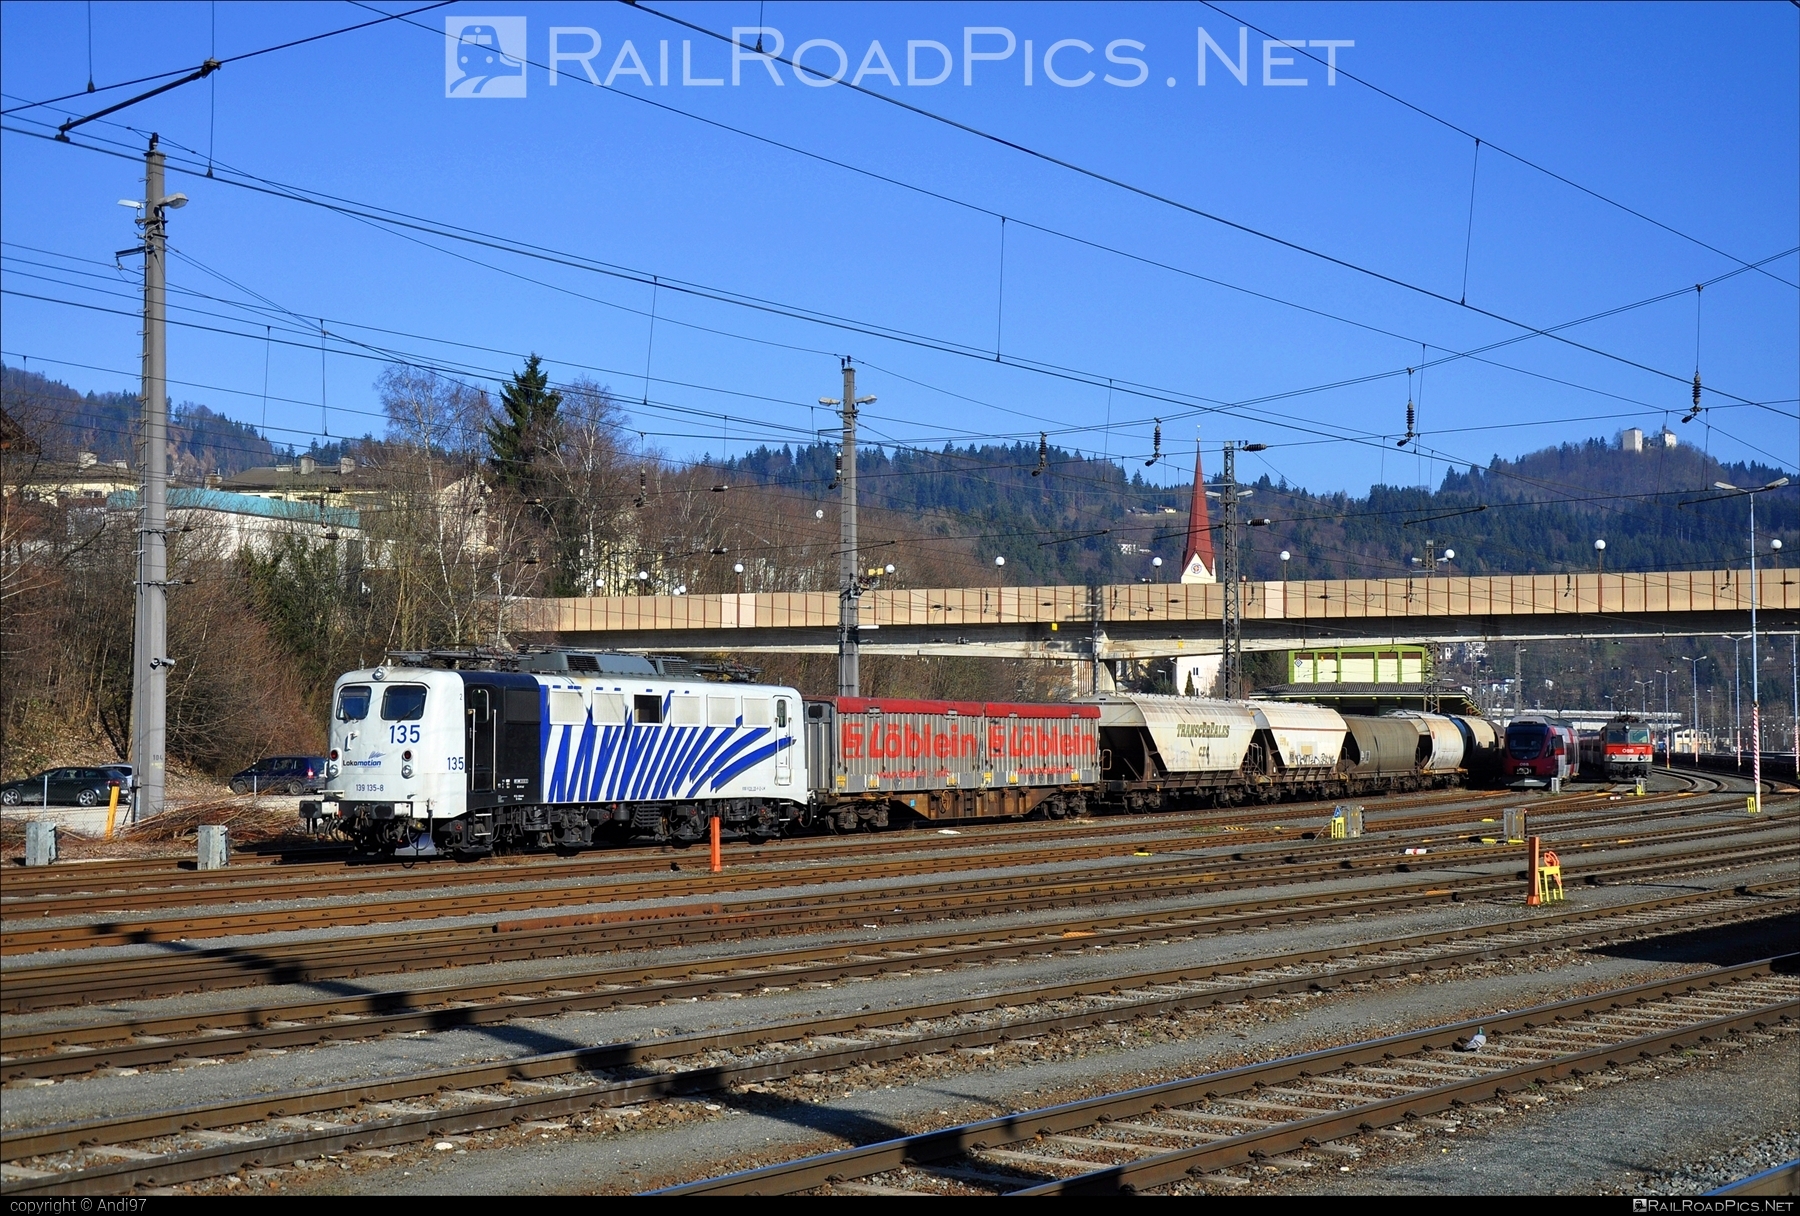 DB Class E 40 (139) - 139 135-8 operated by Lokomotion Gesellschaft für Schienentraktion mbH #LokomotionGesellschaftFurSchienentraktion #dbClass139 #dbClassE40 #lokomotion #mixofcargo